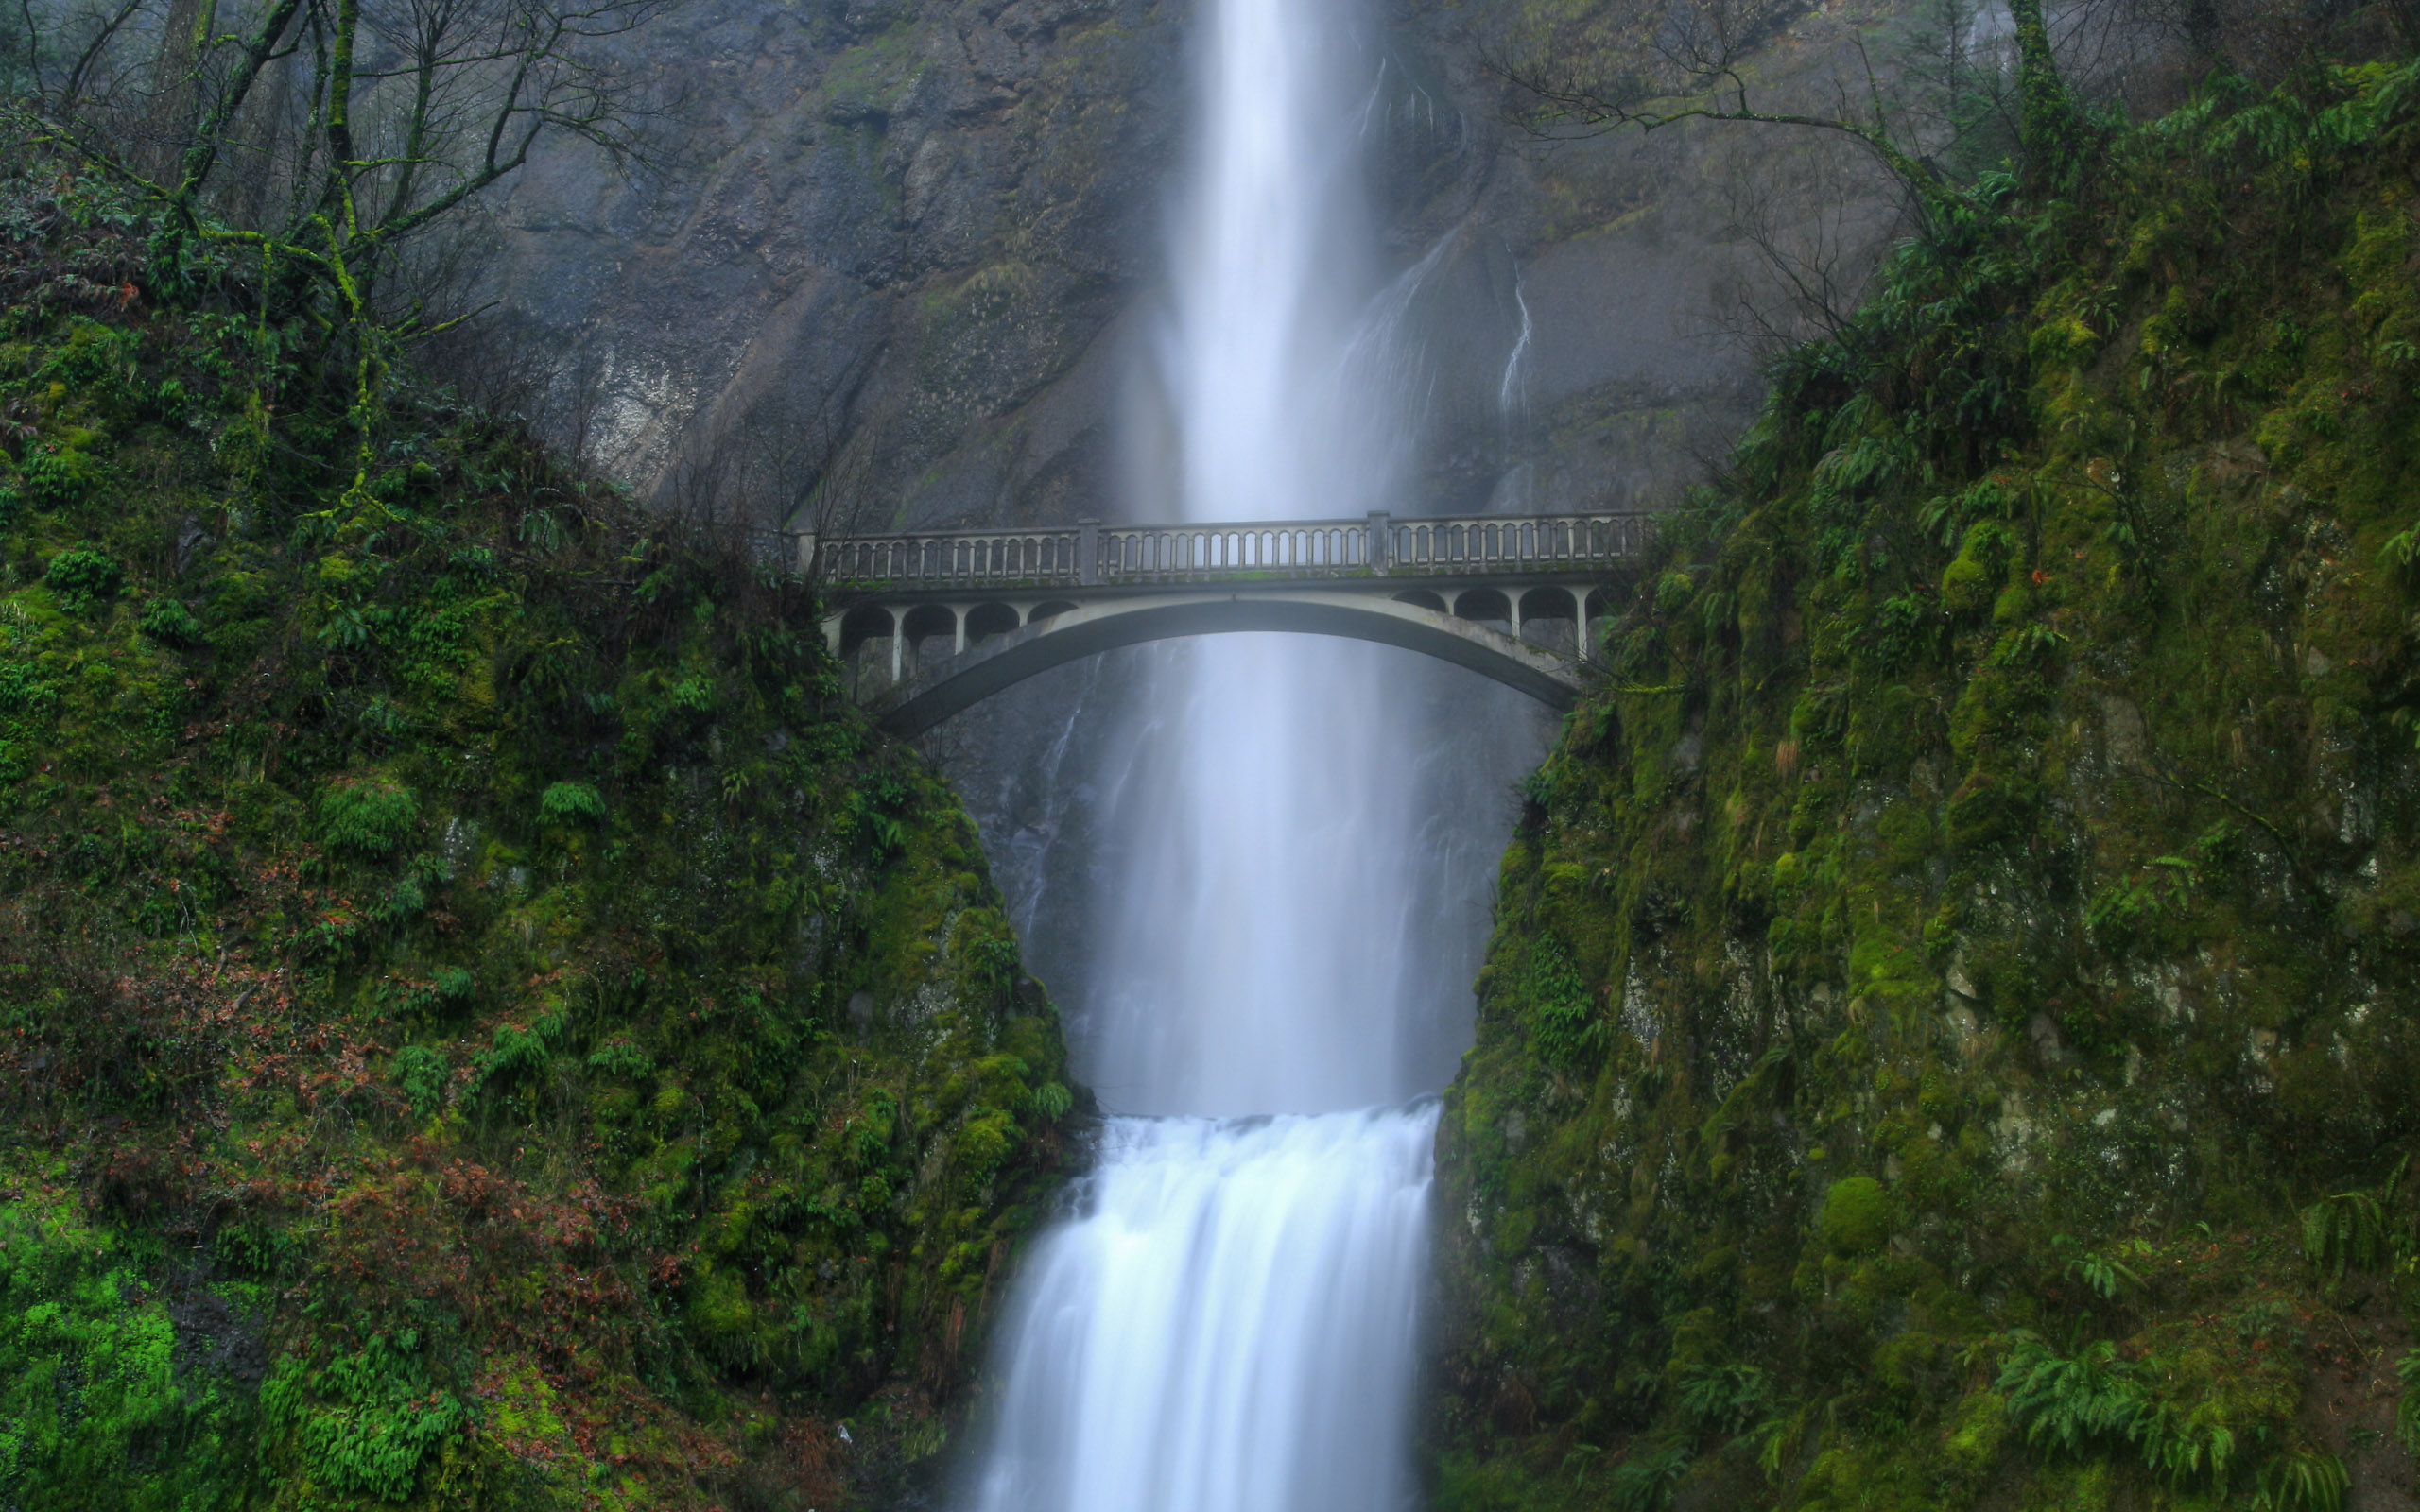 bridges, waterfalls - desktop wallpaper